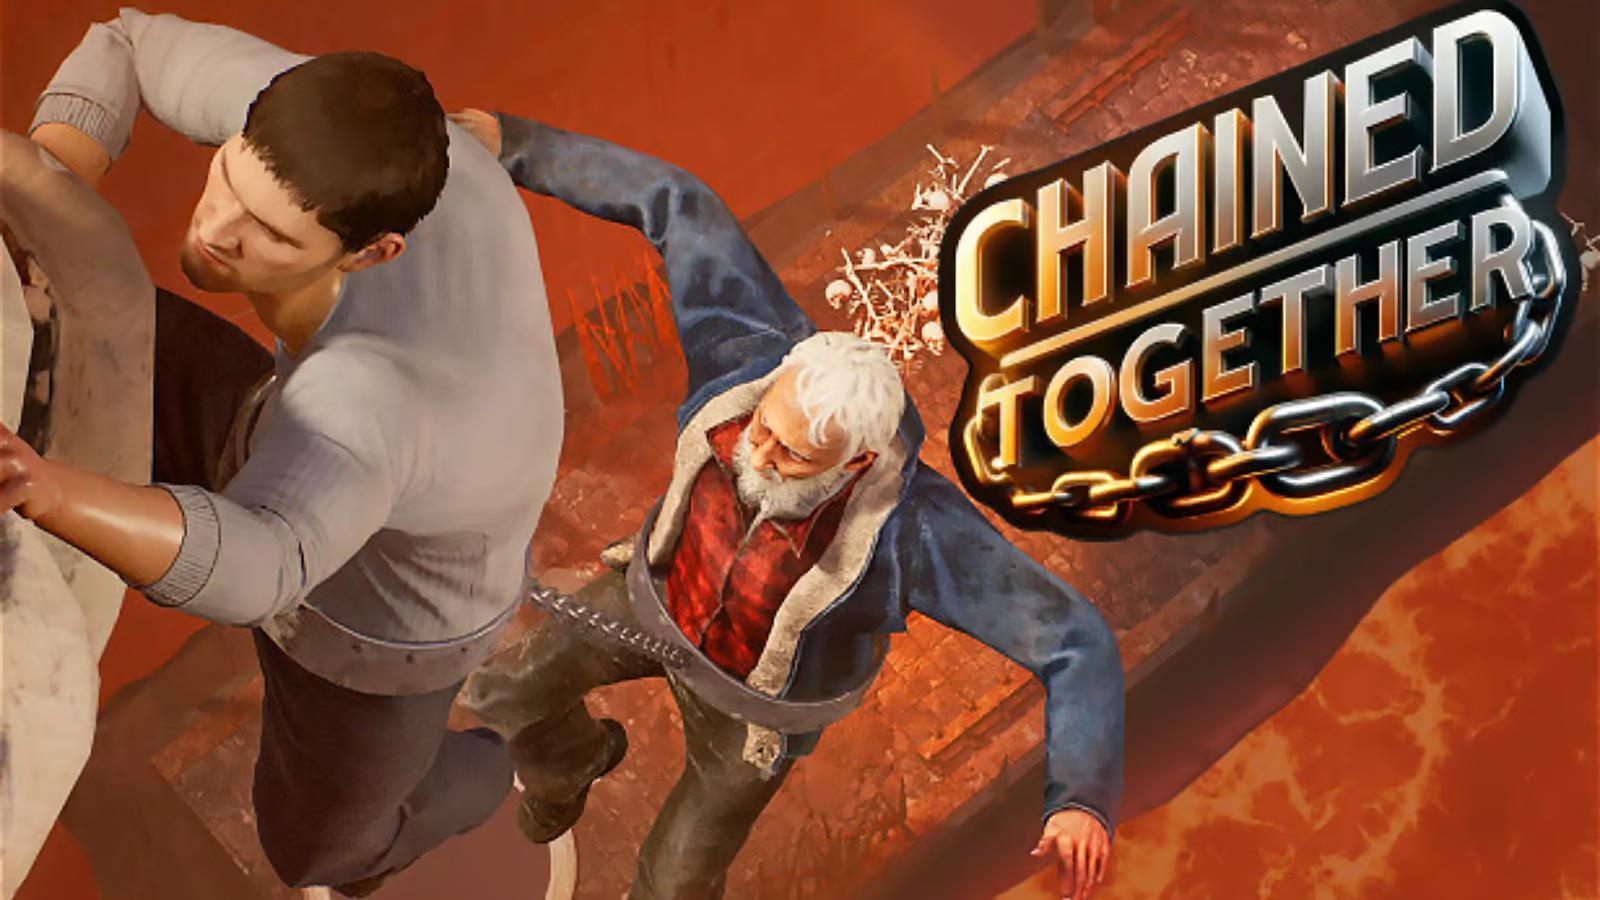 Capture d'écran et logo du jeu Chained Together